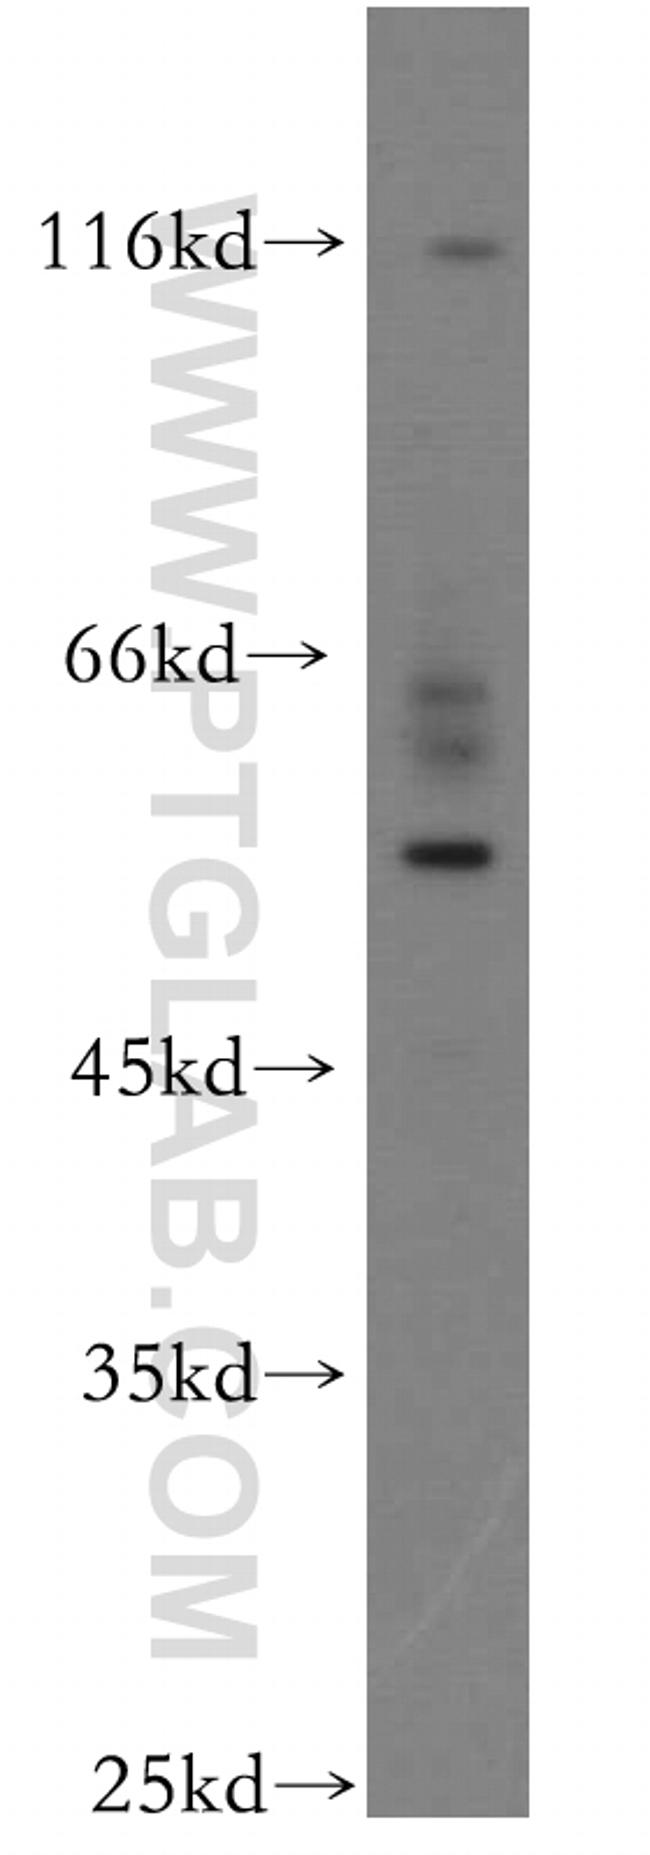 UPF3A Antibody in Western Blot (WB)